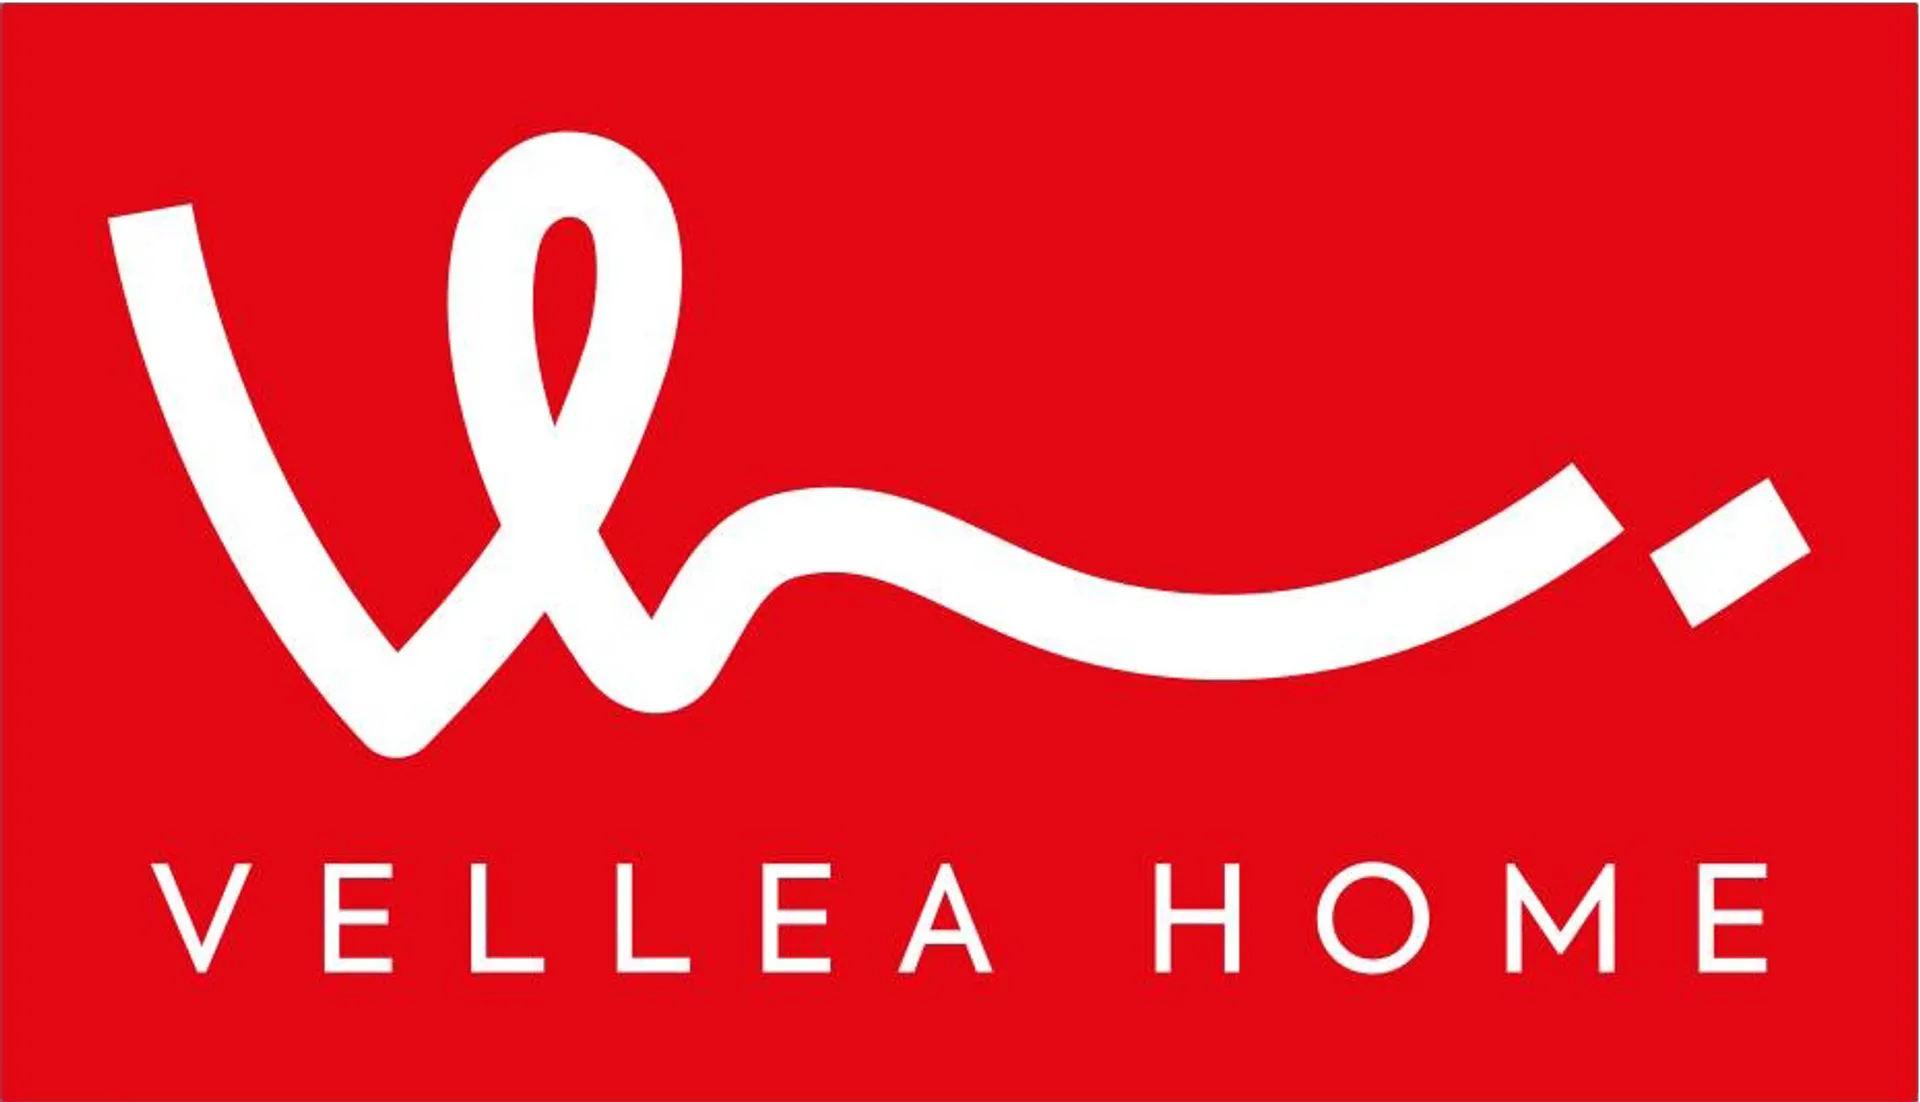 VELLEA HOME logo